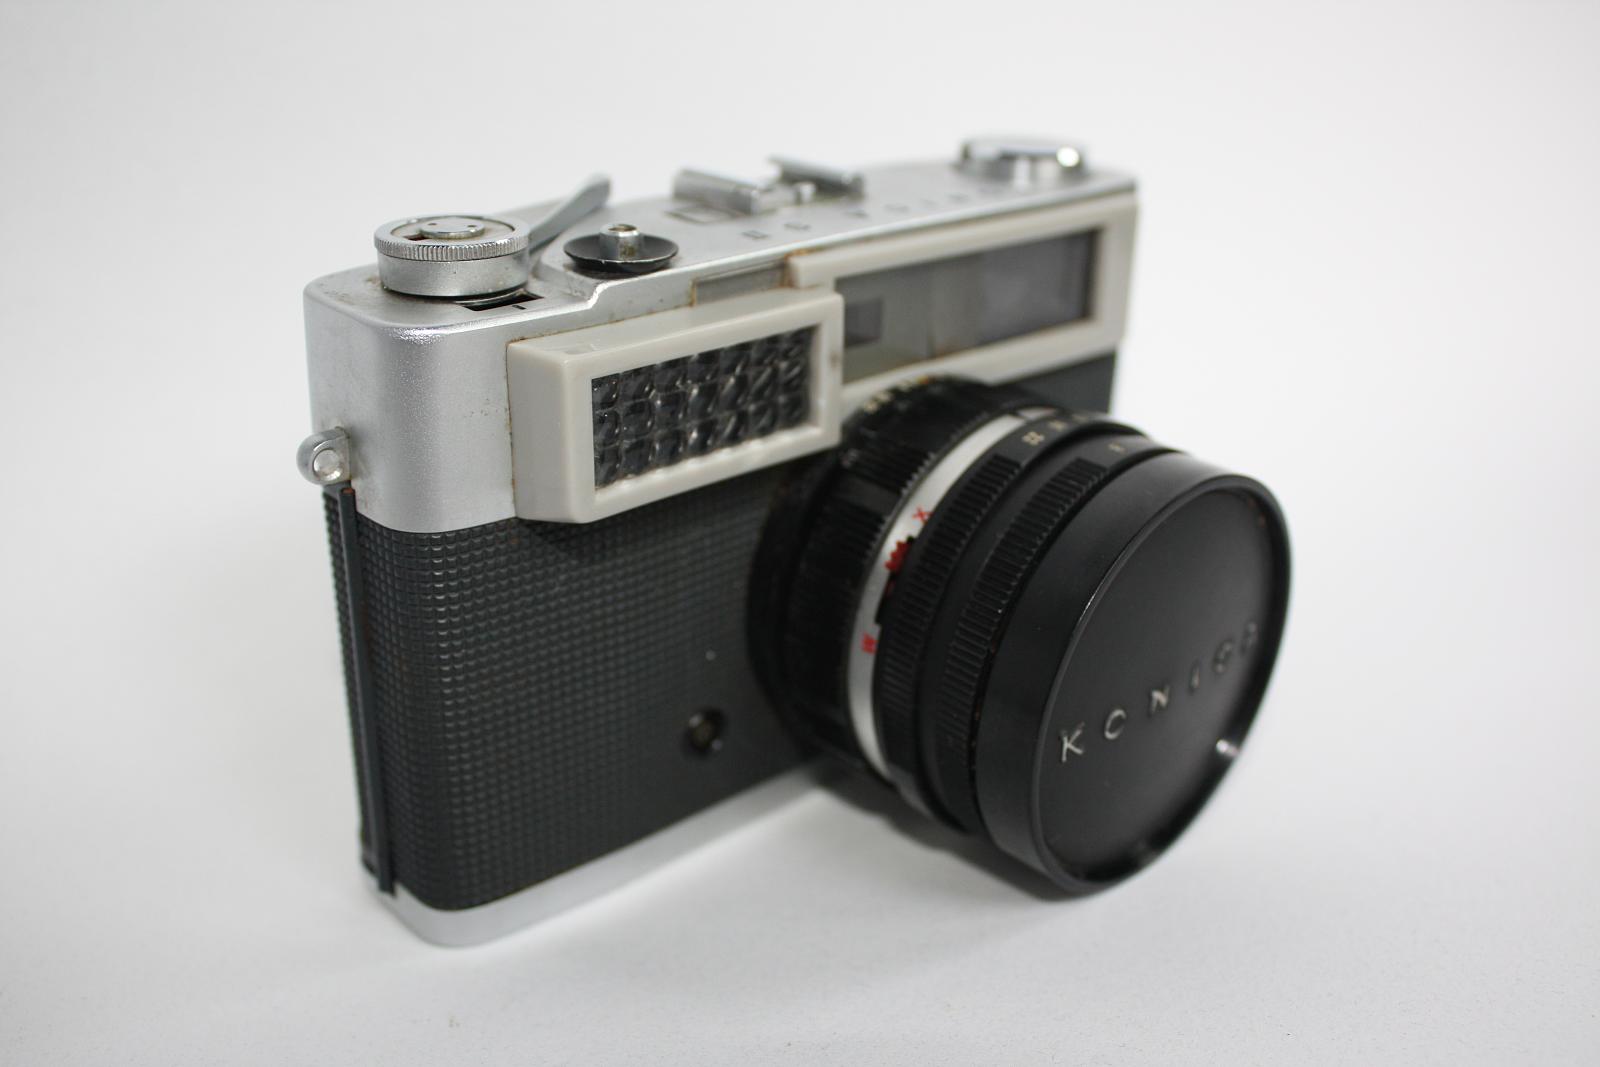 a camera has a mirror and lens cap